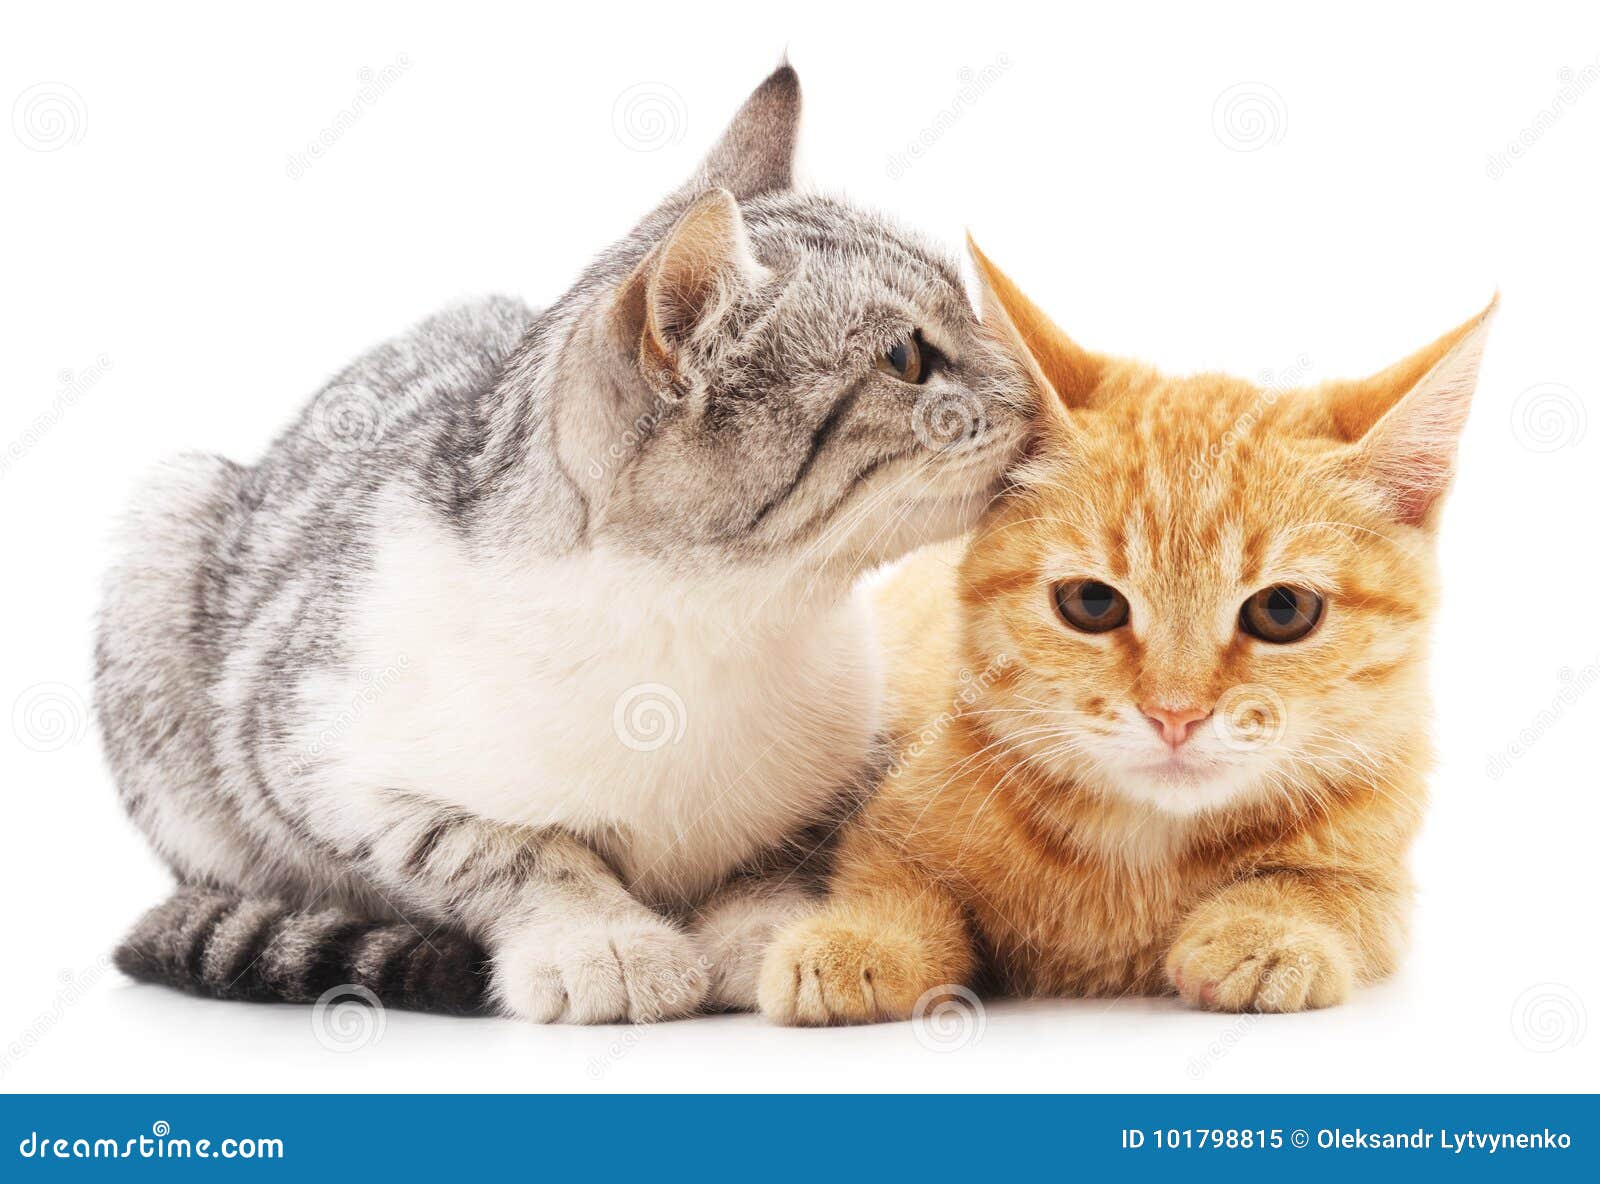 Pakistaans bureau Gevoel van schuld Twee kleine katjes stock afbeelding. Image of katten - 101798815